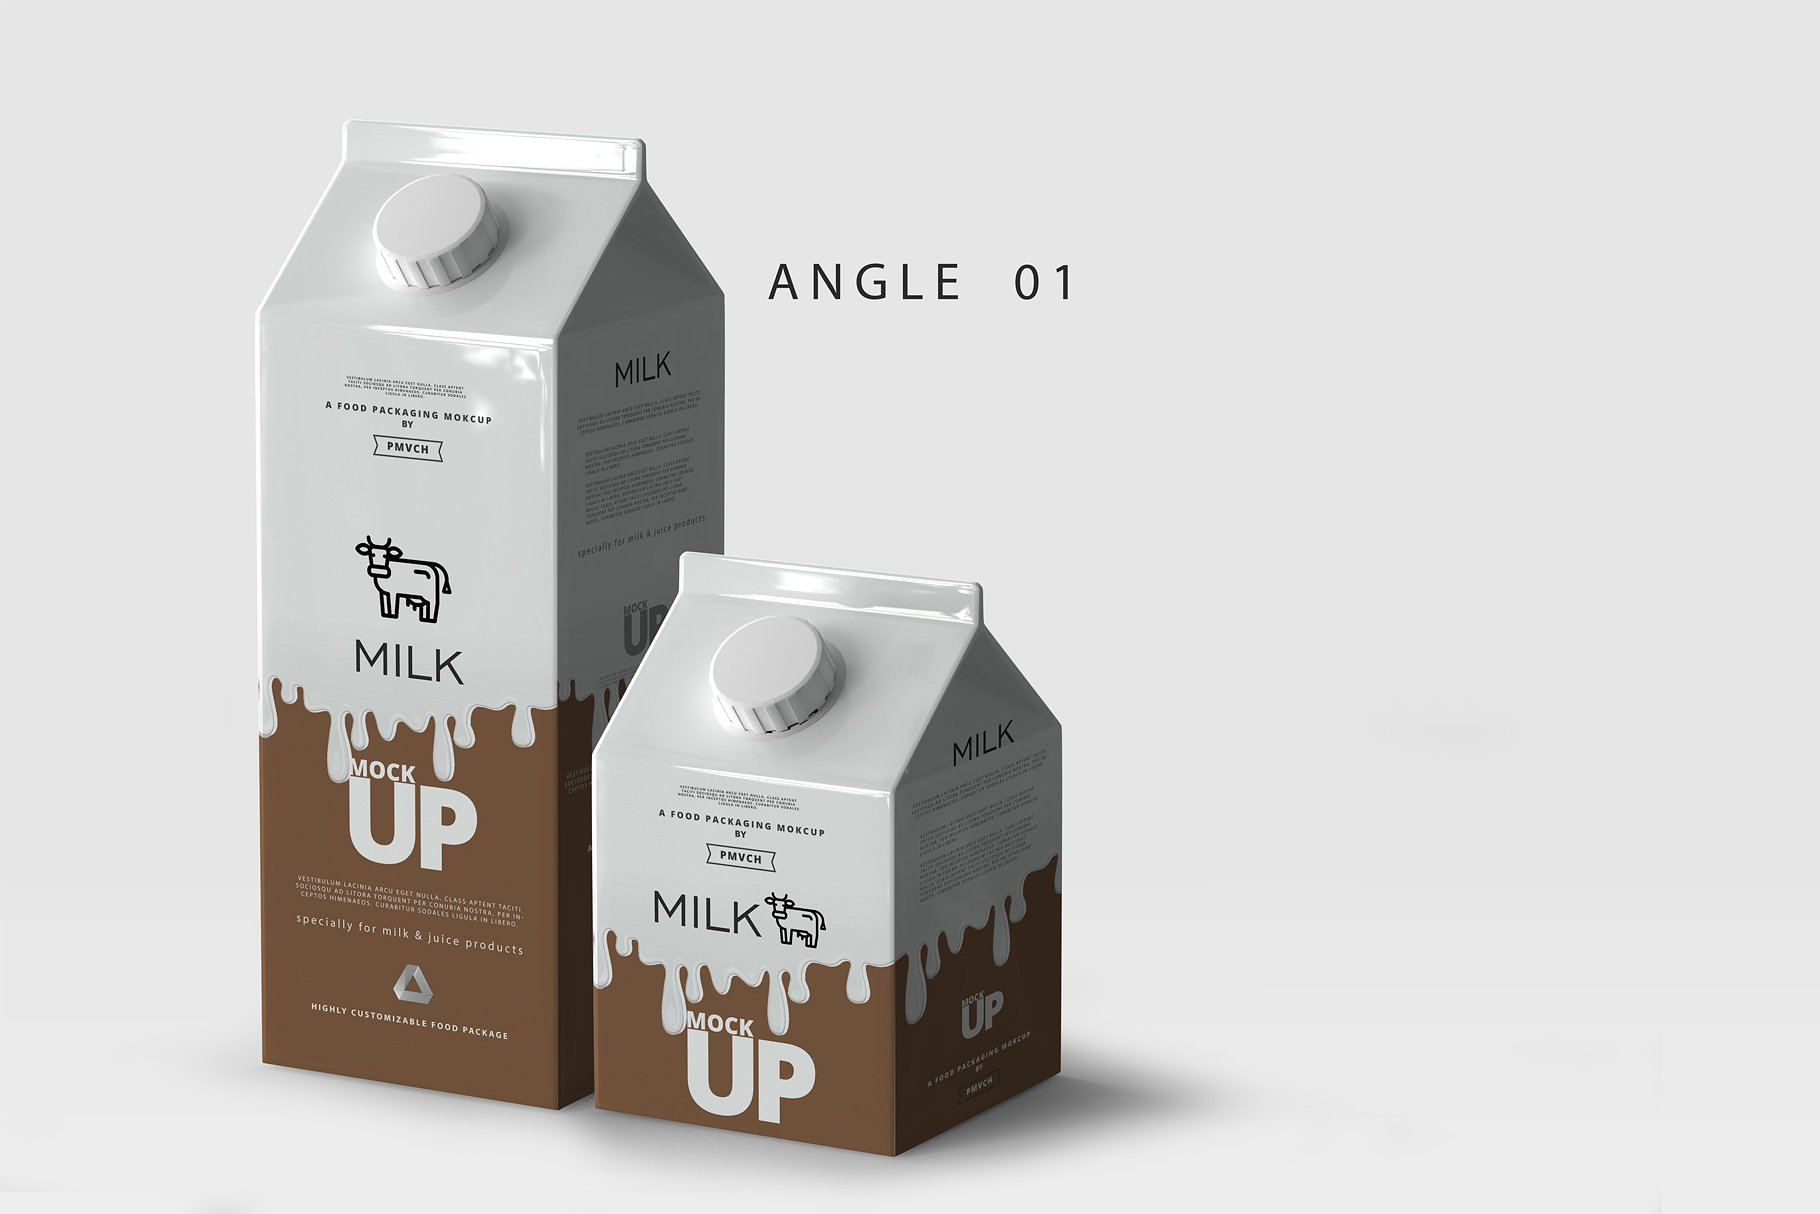 牛奶&果汁纸盒包装展示样机 Milk / Fruit Juice Carton Mockup [psd]插图(1)